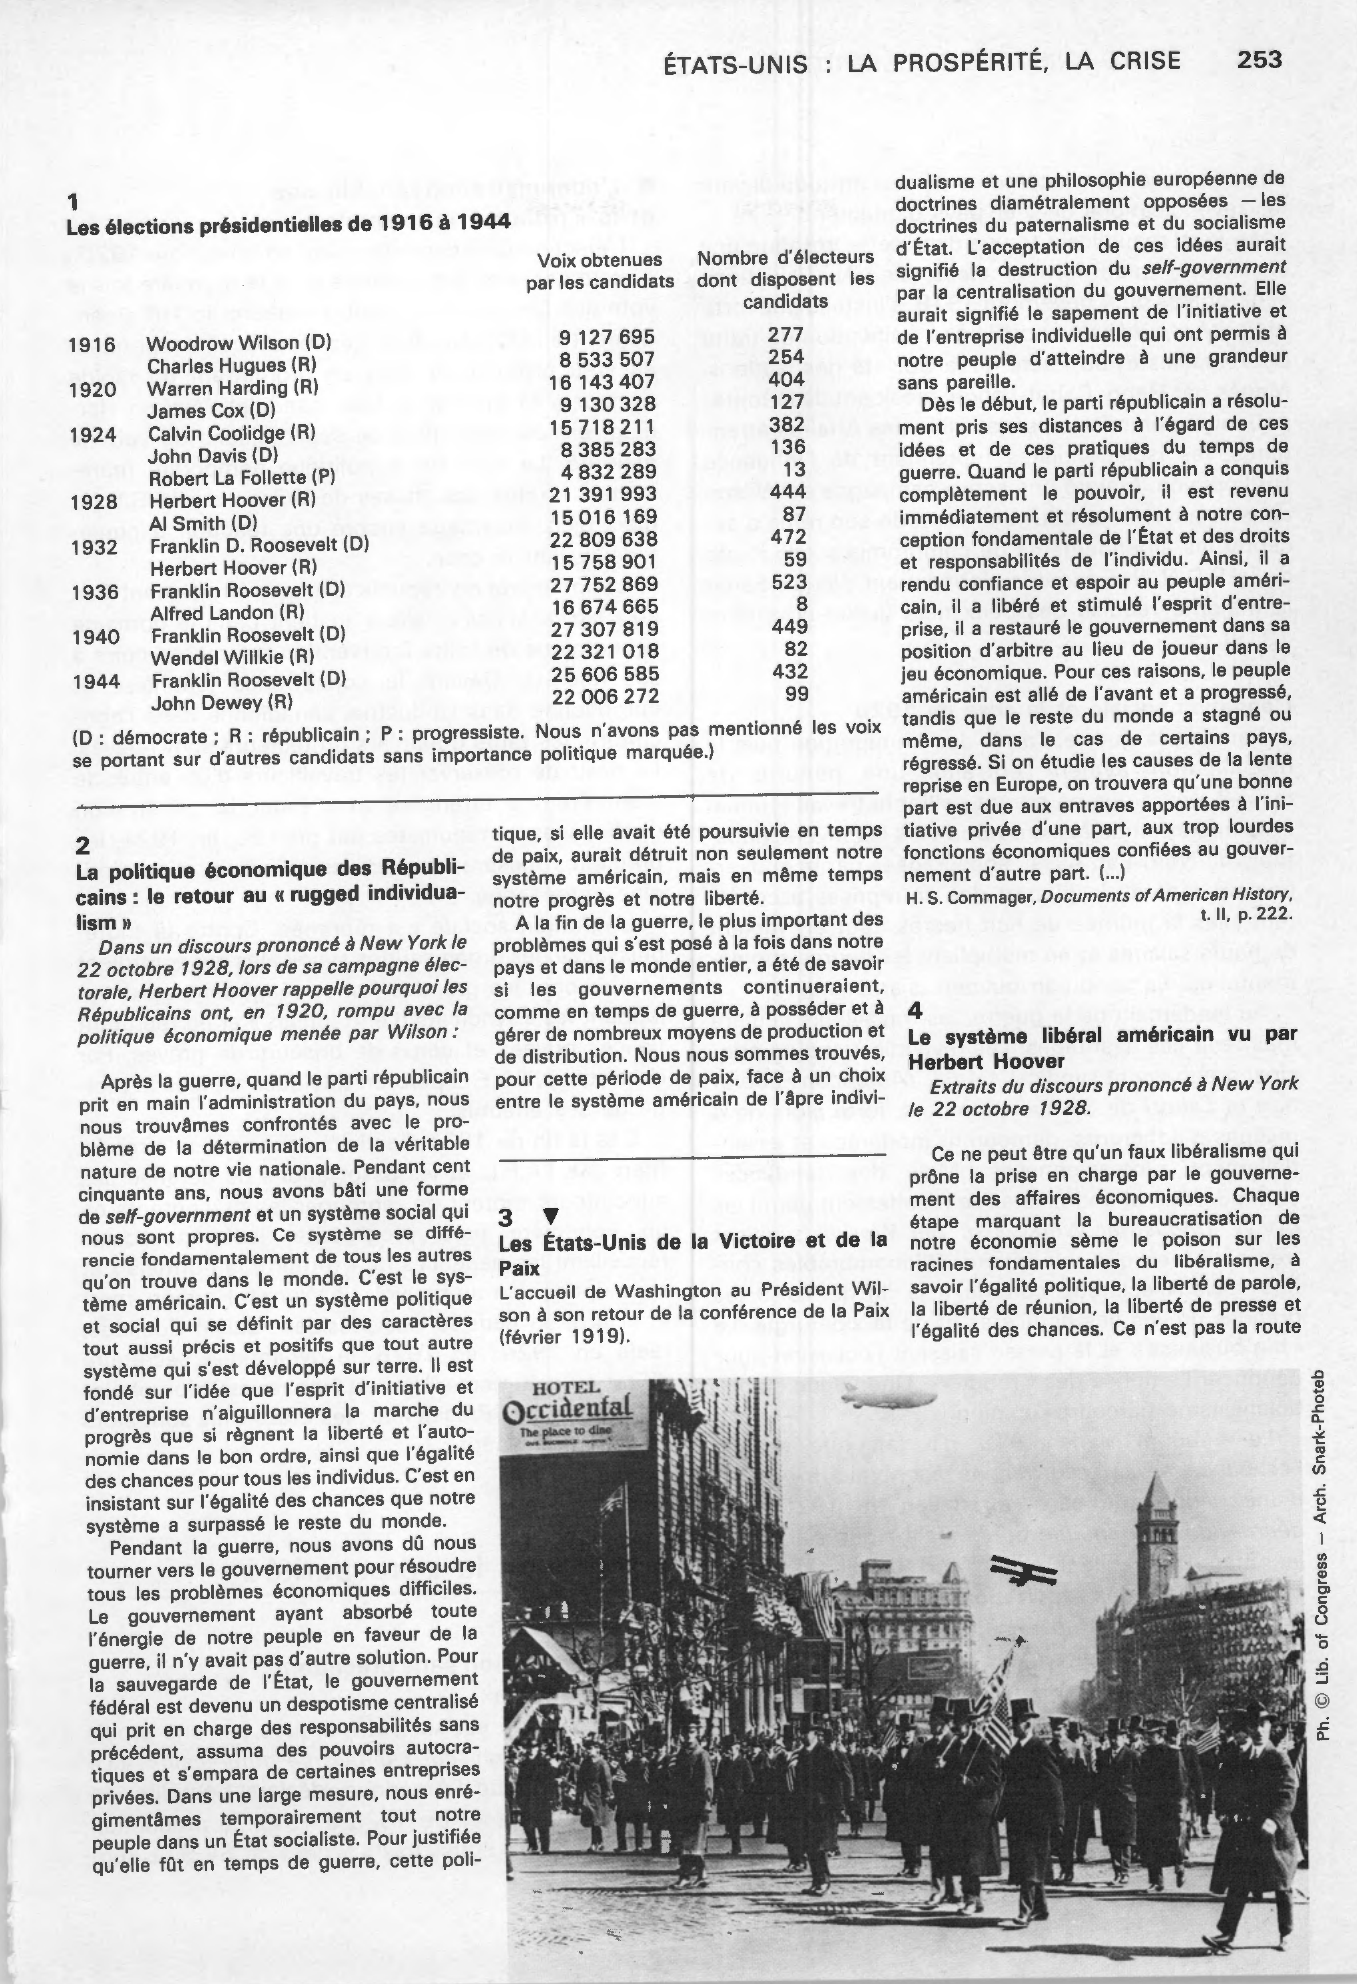 Prévisualisation du document ÉTATS-UNIS DE LA PROSPÉRITÉ, ÉTATS-UNIS DE LA CRISE de 1929 (Histoire)